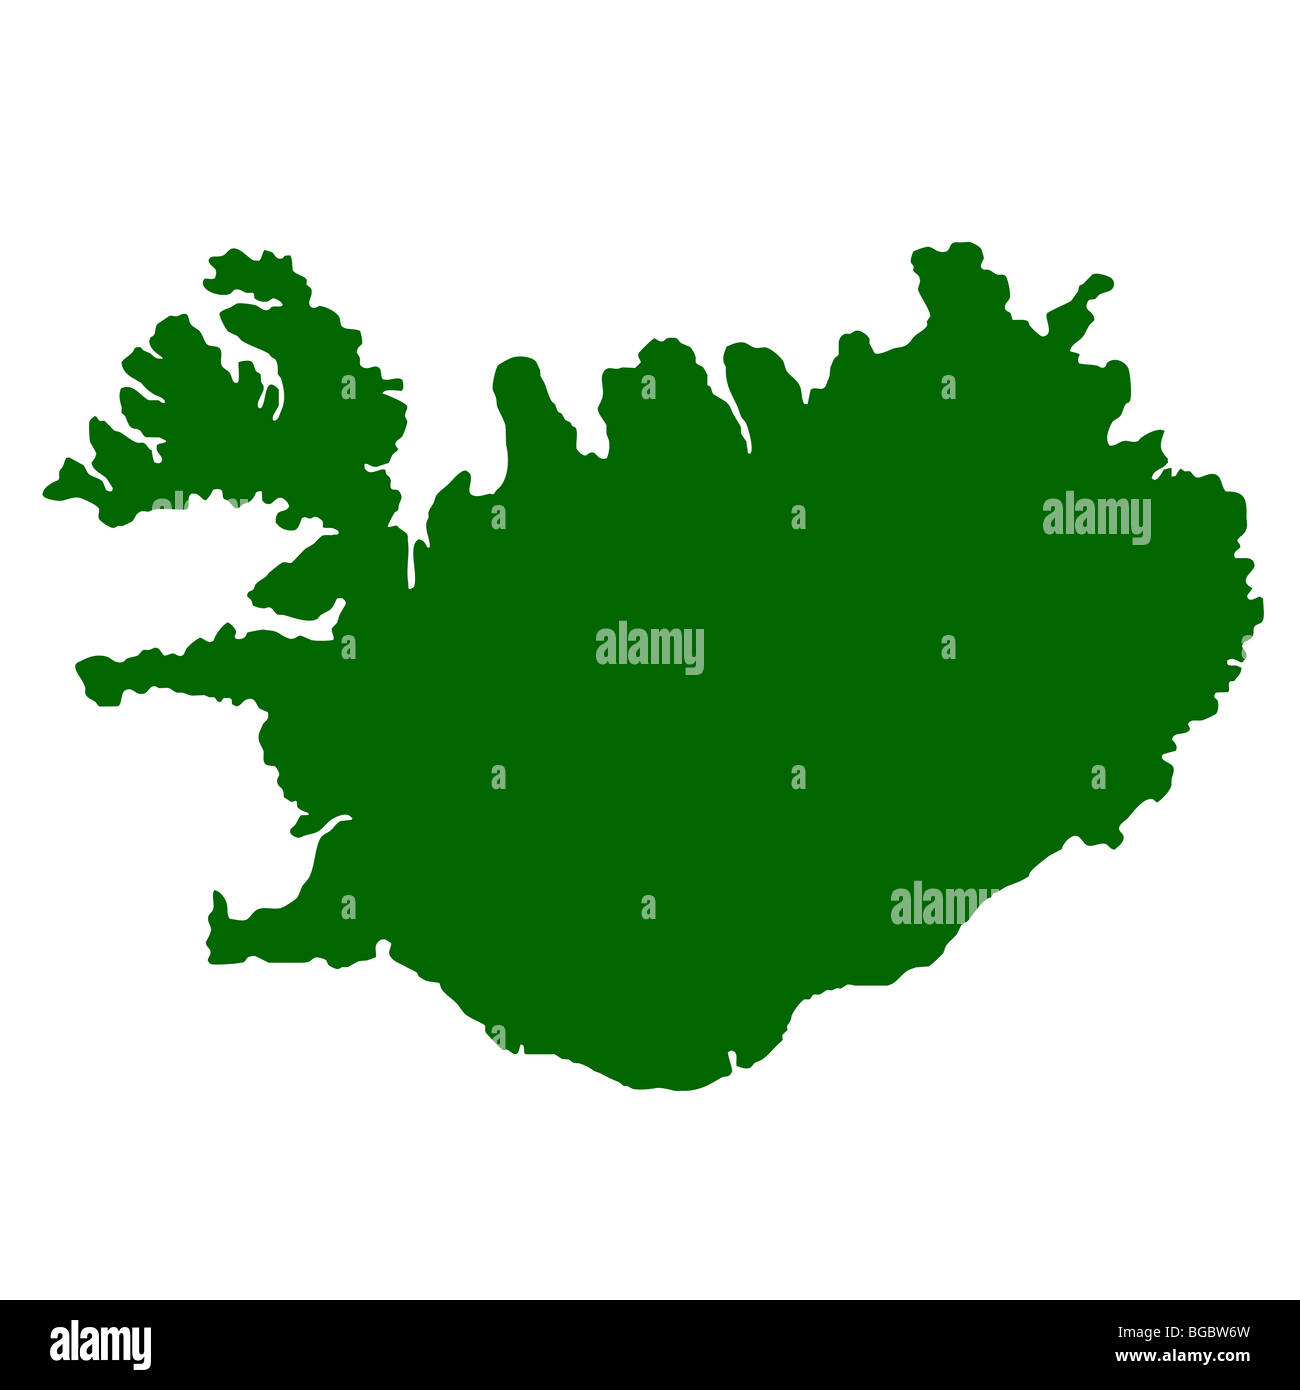 Map of Iceland isolated on white background. Stock Photo